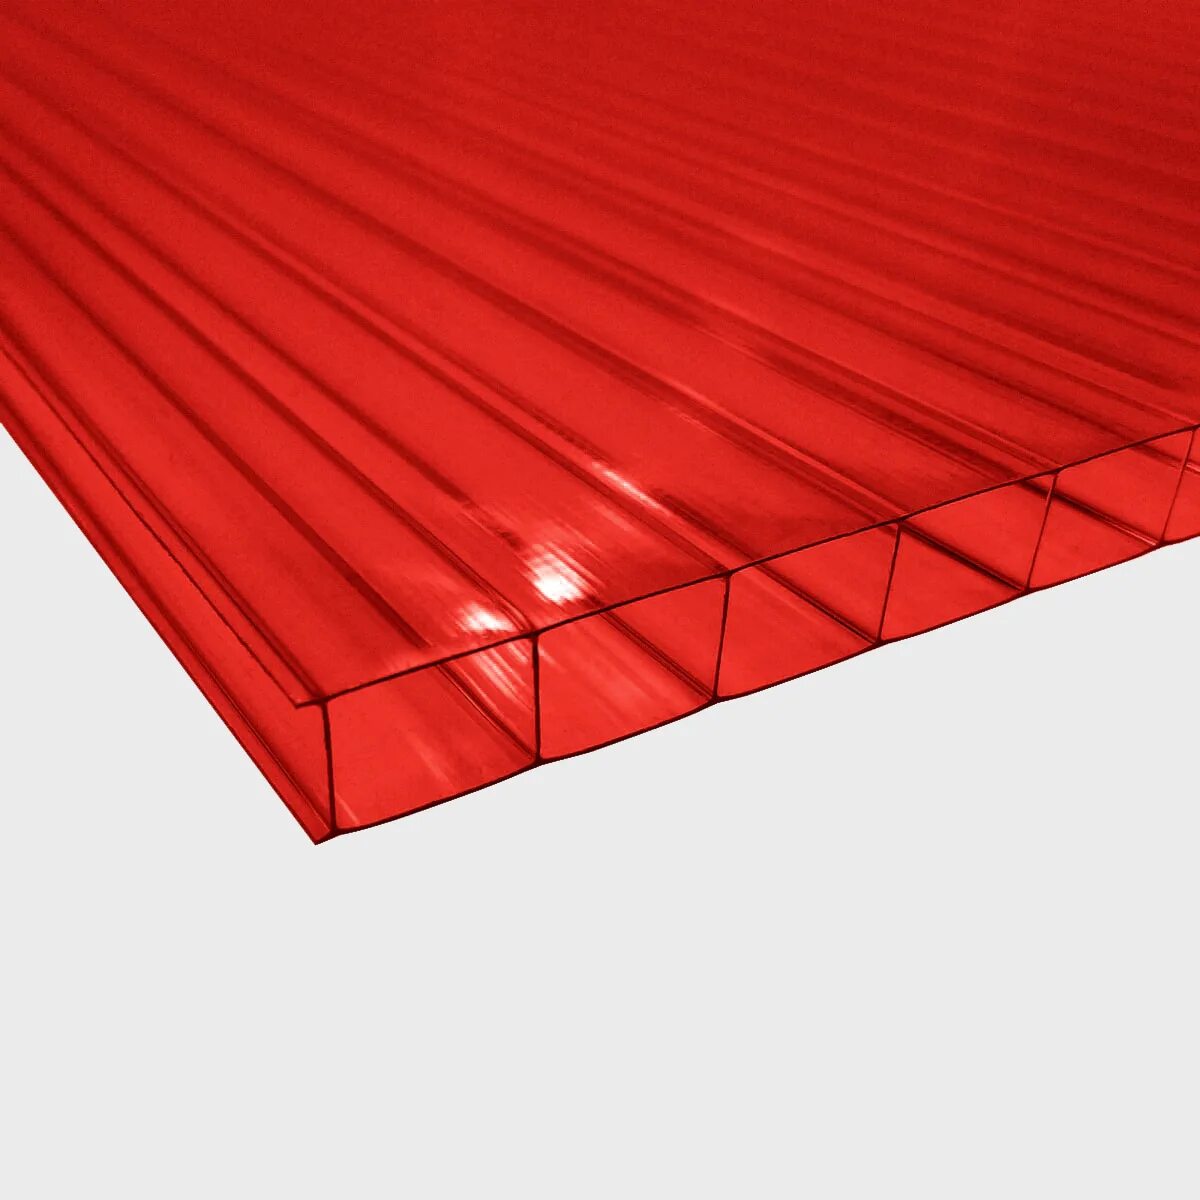 Поликарбонат Полигаль Колибри 4мм. Поликарбонат сотовый Ultramarin (2100*6000*4мм) прозрачный (пл.0.5). Поликарбонат красный "Ultra" 4мм 2100*6000 0,5пл. Berolux поликарбонат.